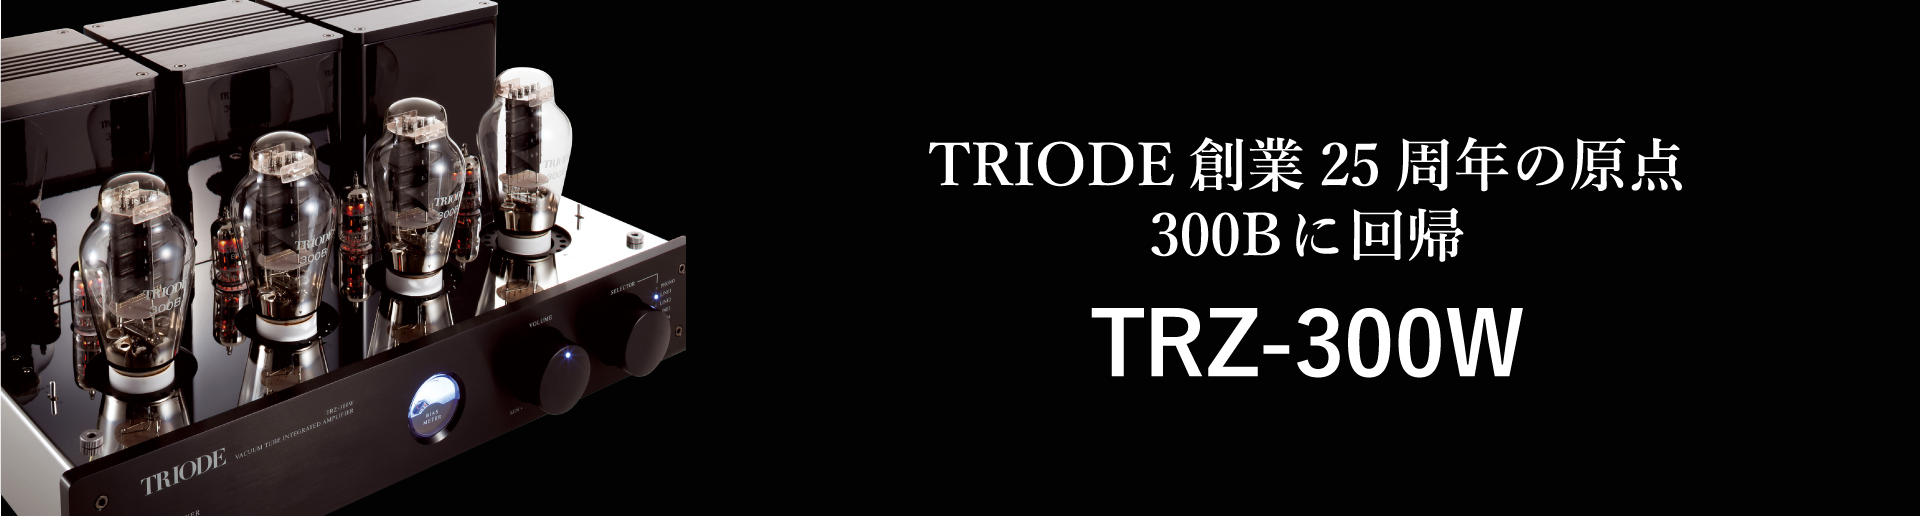 TRIODE TRZ-300W,SOUNDTEC,山口県オーディオショップ、広島県オーディオ、島根県オーディオ、福岡県オーディオ